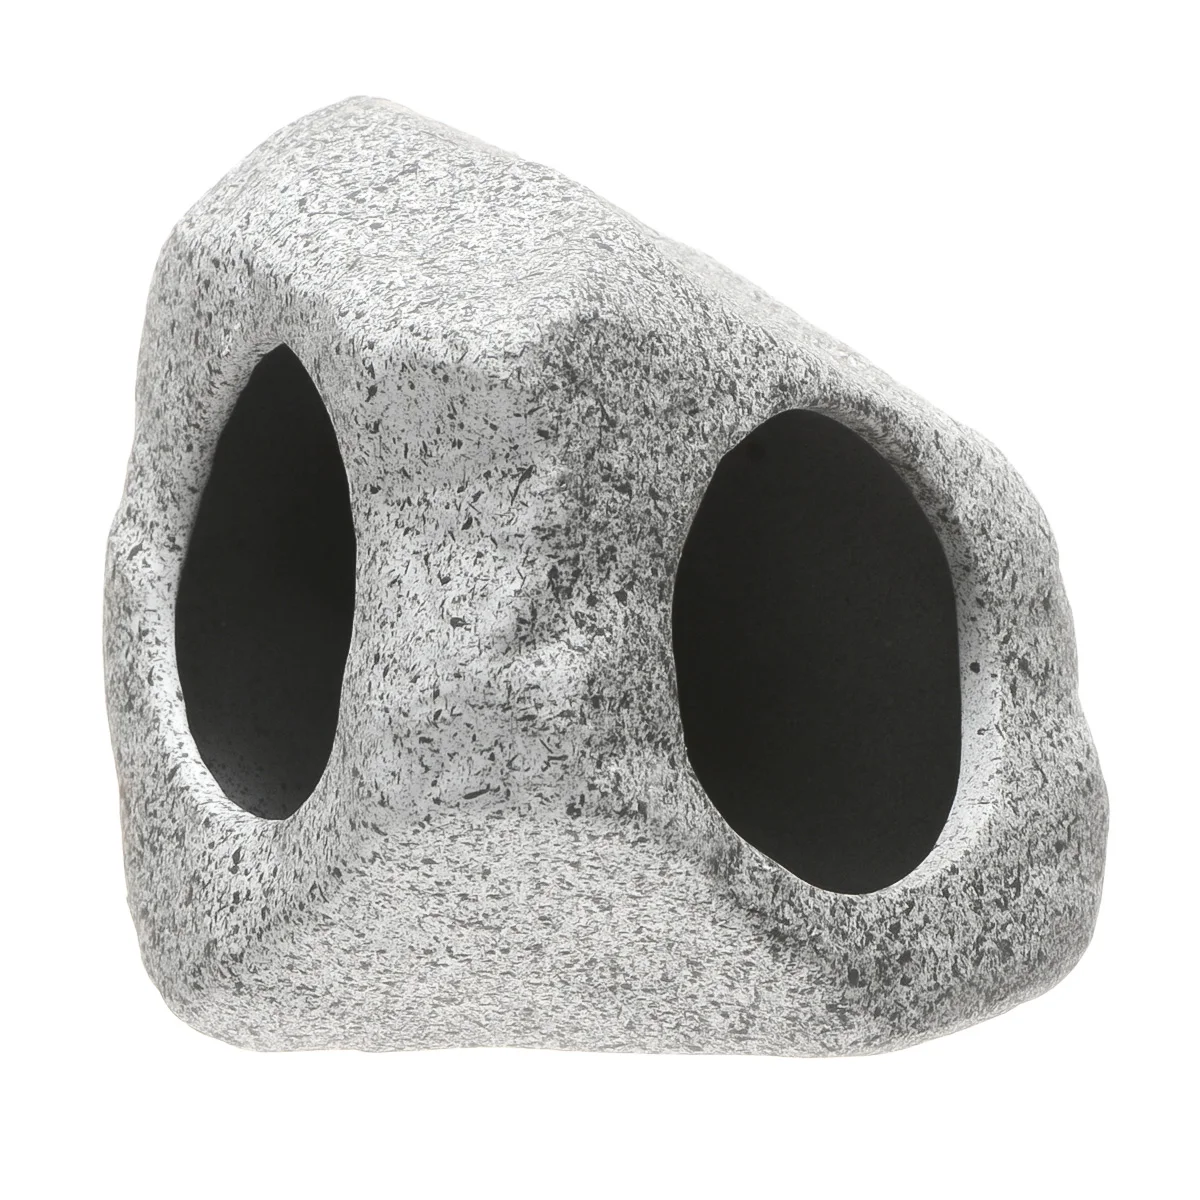 Саим аквариум Декор керамический серый камень имитация маленькое отверстие для разведения креветок пещера с рыбами икров пещера укрытие аквариума аксессуары